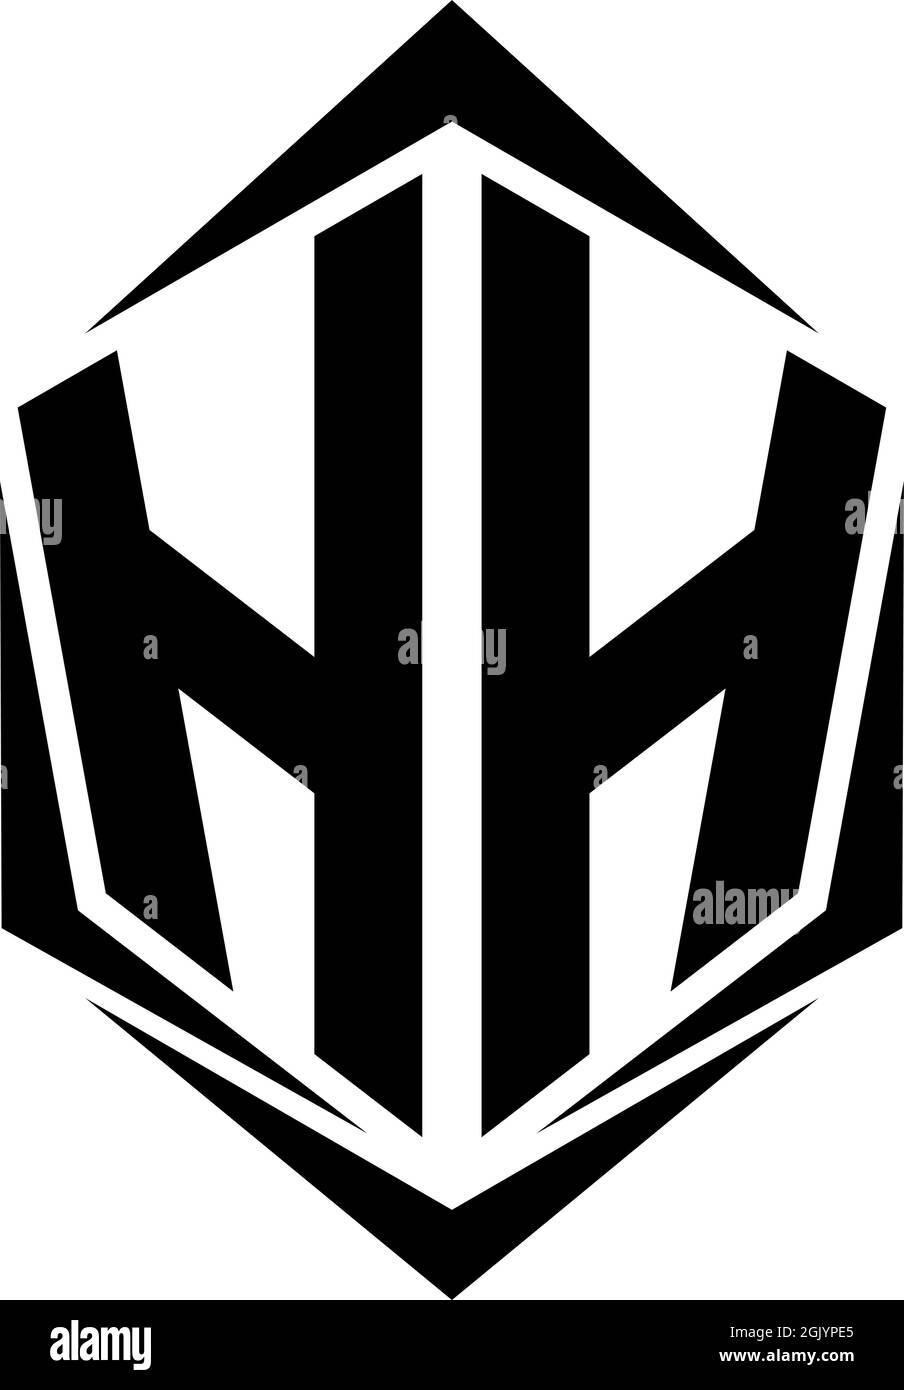 Design iniziale del logo HH con stile Shield, branding aziendale con logo. Illustrazione Vettoriale